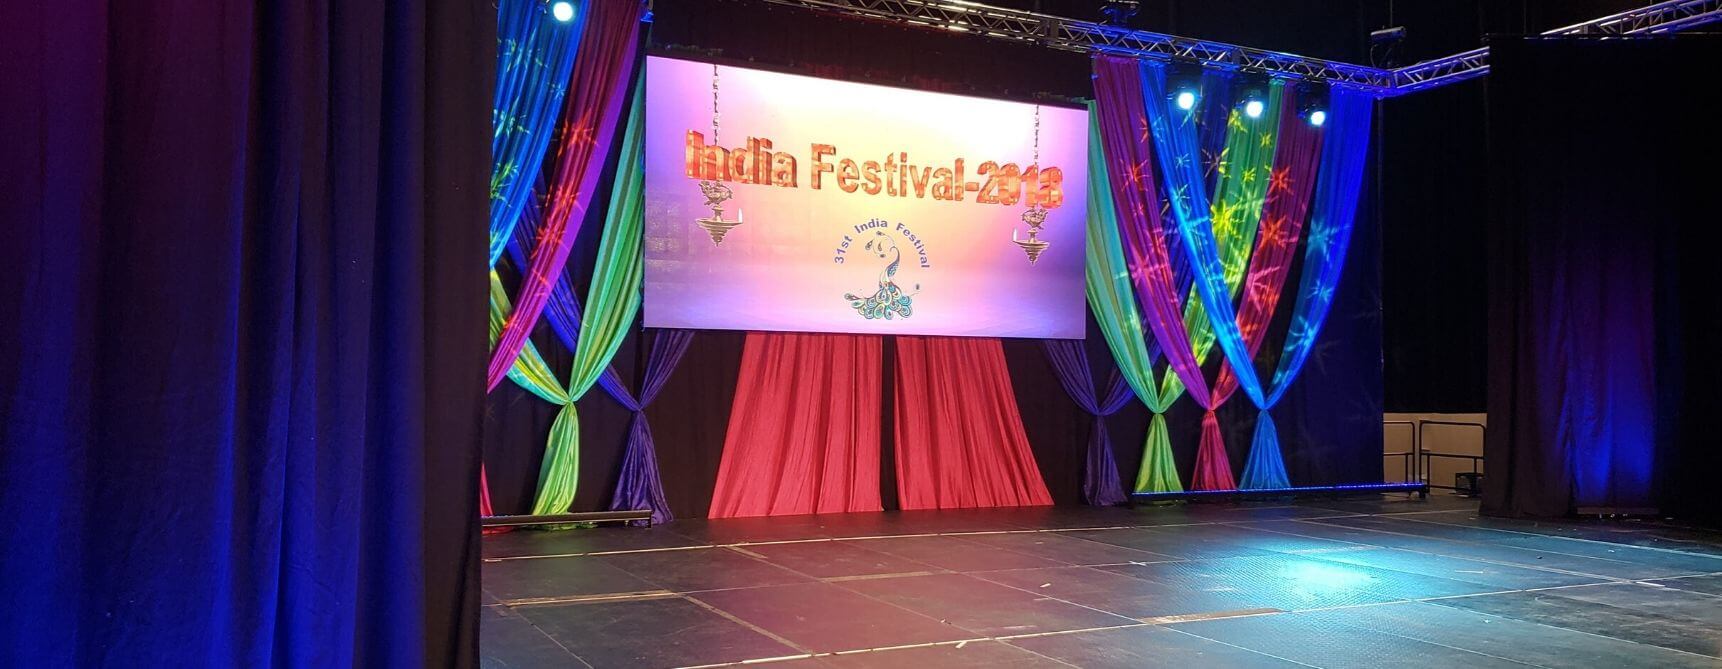 1 India Fest Event